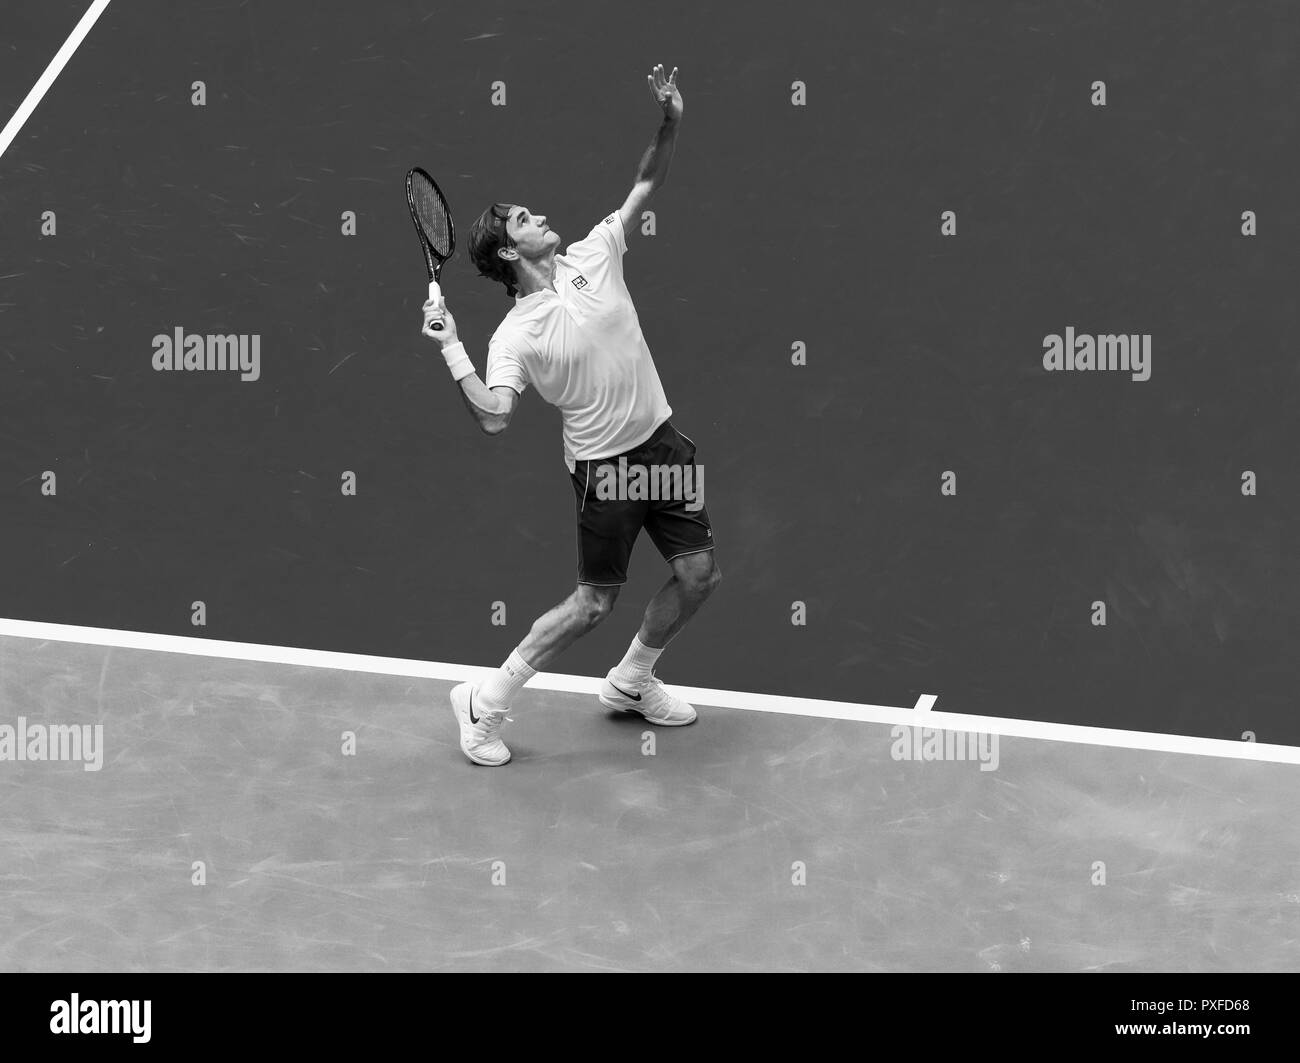 New York, NY - 30 août 2018 : Roger Federer sert de la Suisse au cours de l'US Open 2018 2ème tour match contre Benoit Paire de la France à l'USTA Billie Jean King National Tennis Center Banque D'Images